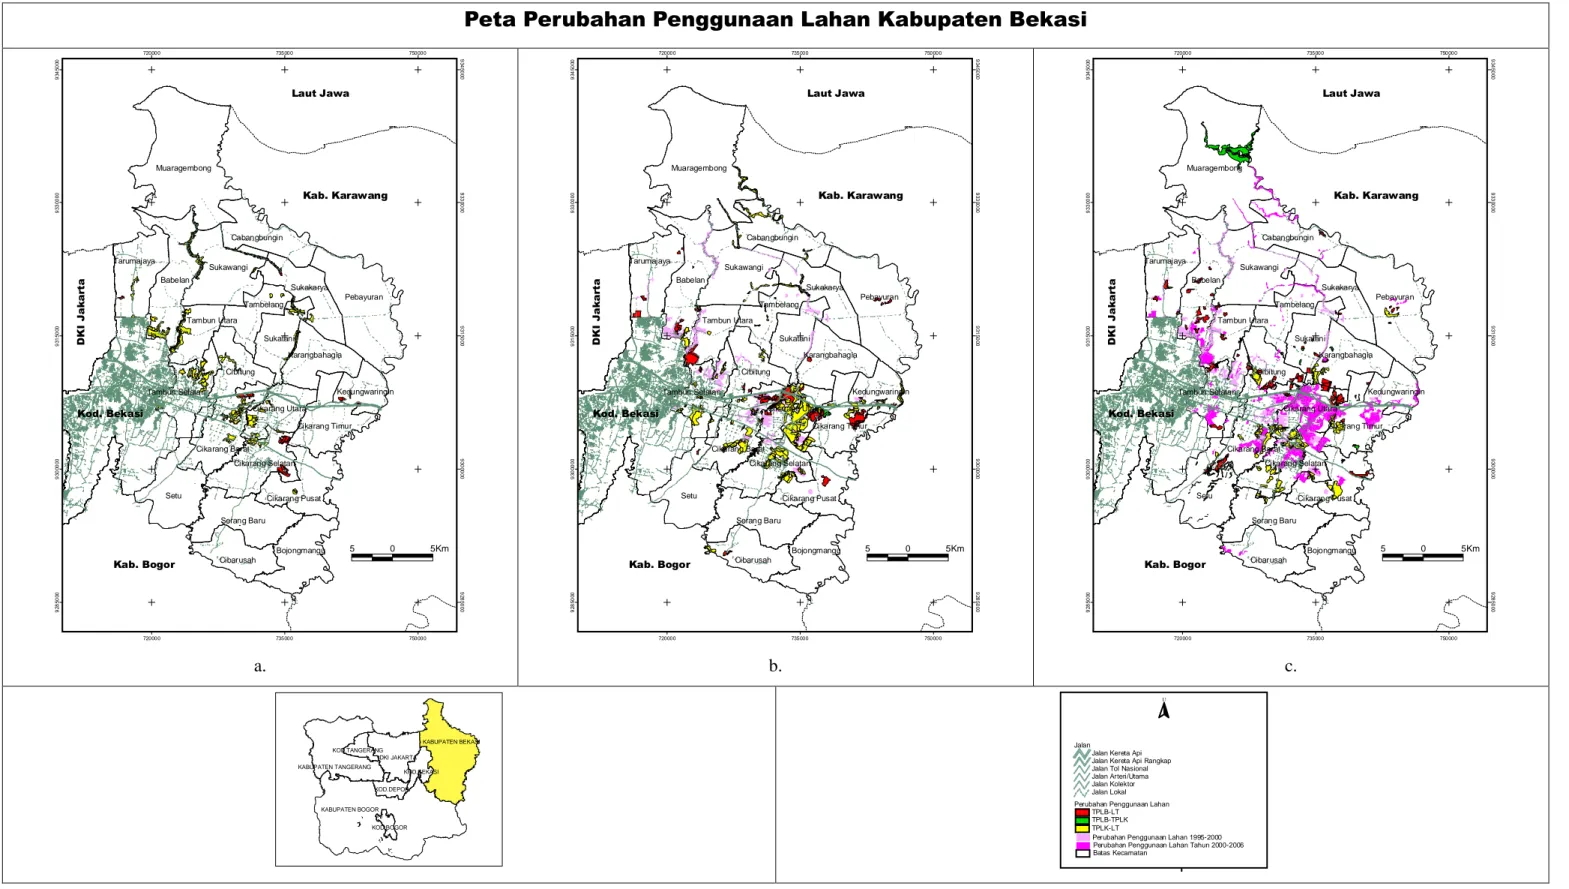 Gambar 10. Perubahan Penggunaan Lahan Kabupaten Bekasi (a) Tahun 1995-2000, (b) Tahun 2000-2006 dan (c) Tahun 2006-2009 